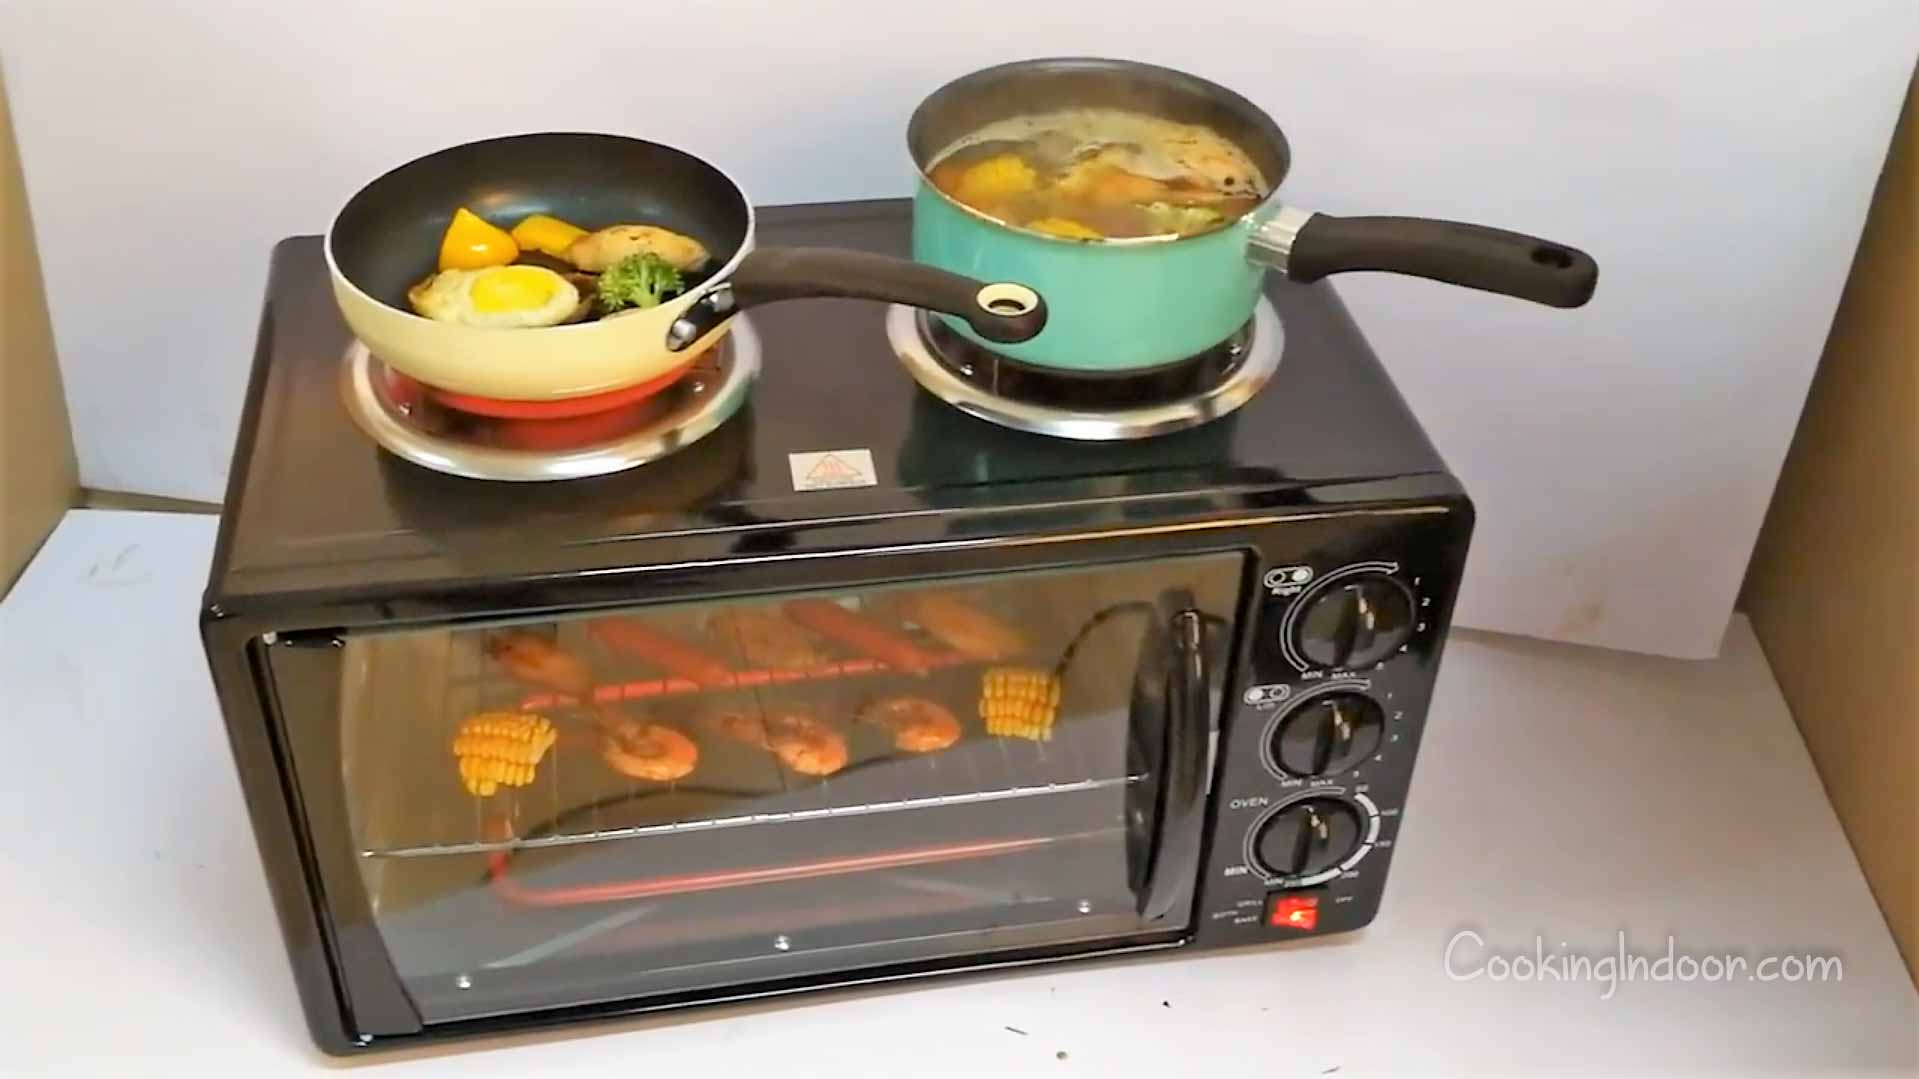 Avanti MKB42B Mini Kitchen Multi-Function Oven Convection Toaster 